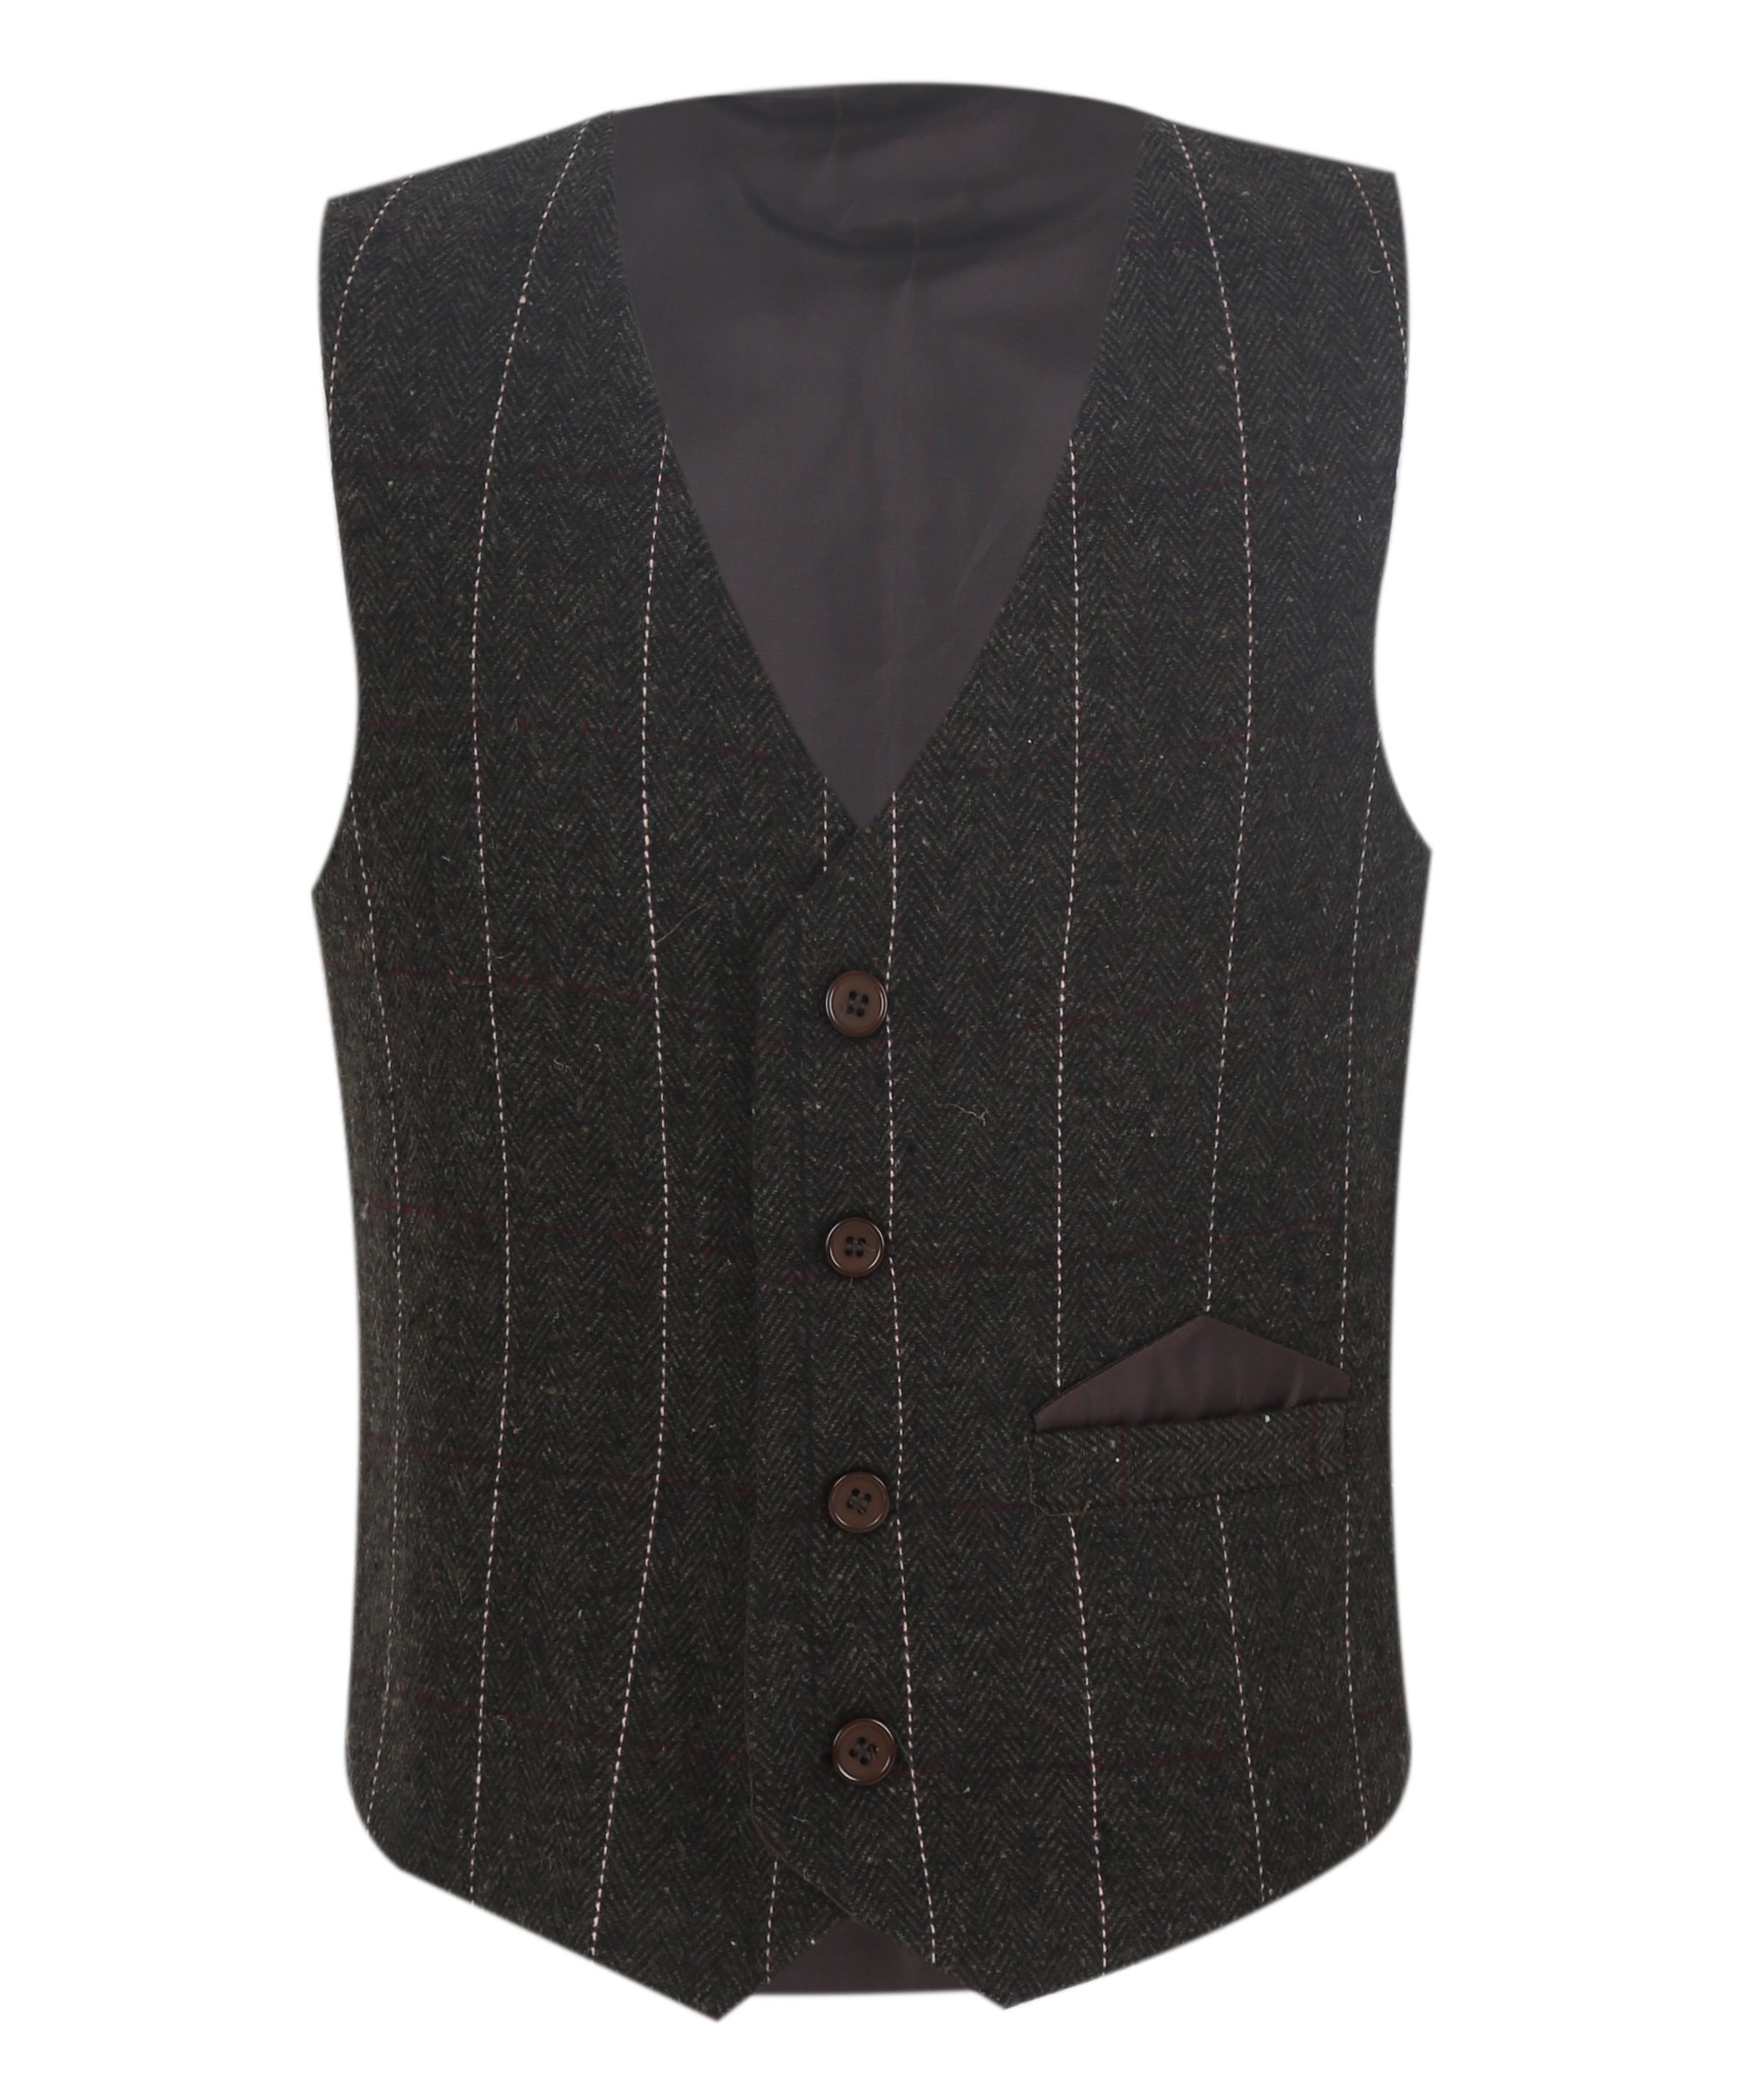 Boys Tweed Pinstrip Dark Brown Waistcoat Suit Set